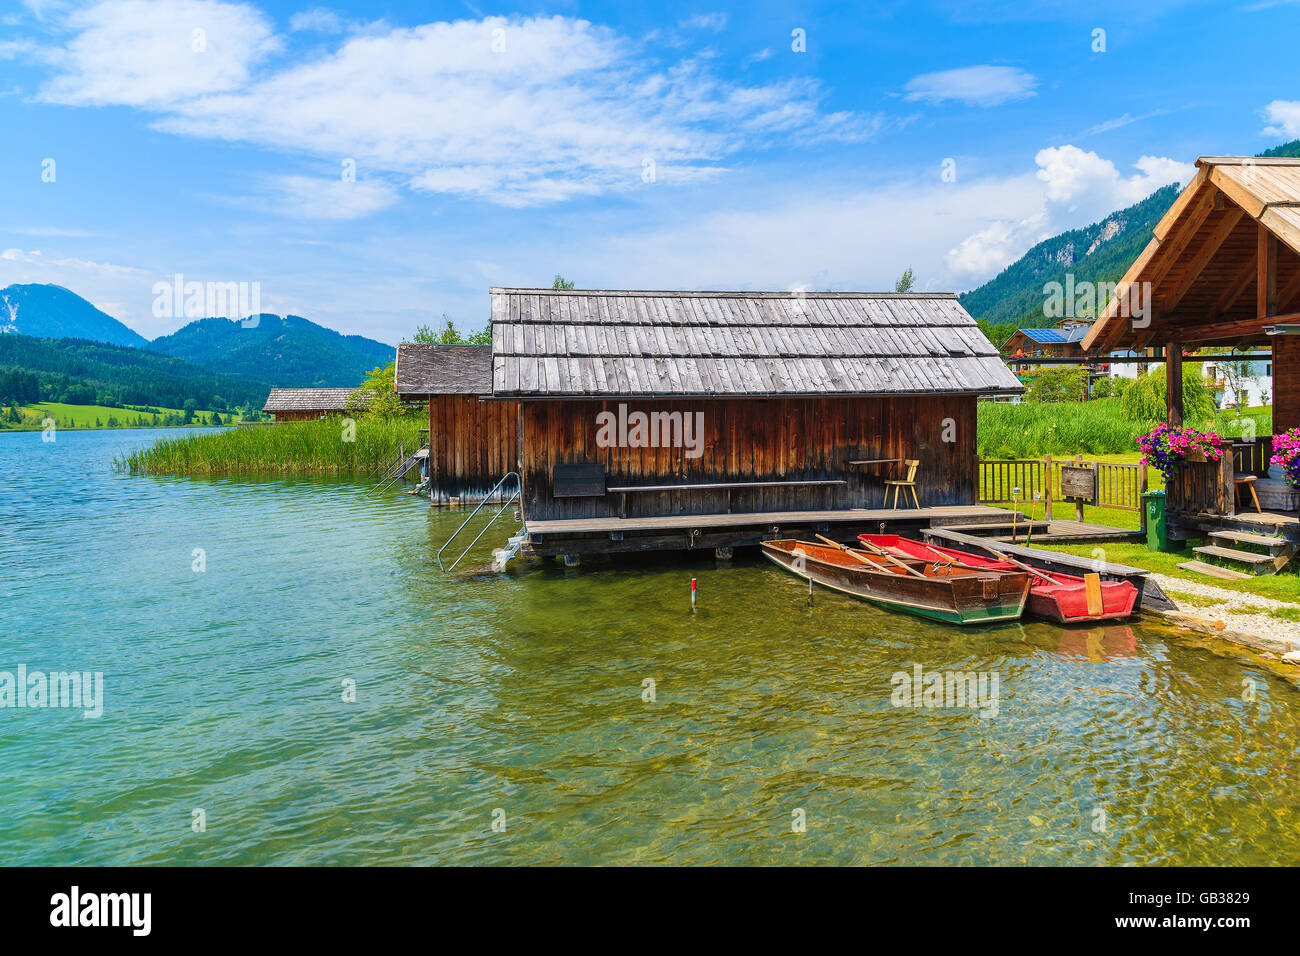 Angelboote/Fischerboote und Holzhäuser am Ufer des Weißensee in Sommerlandschaft Carinthia Land, Österreich Stockfoto